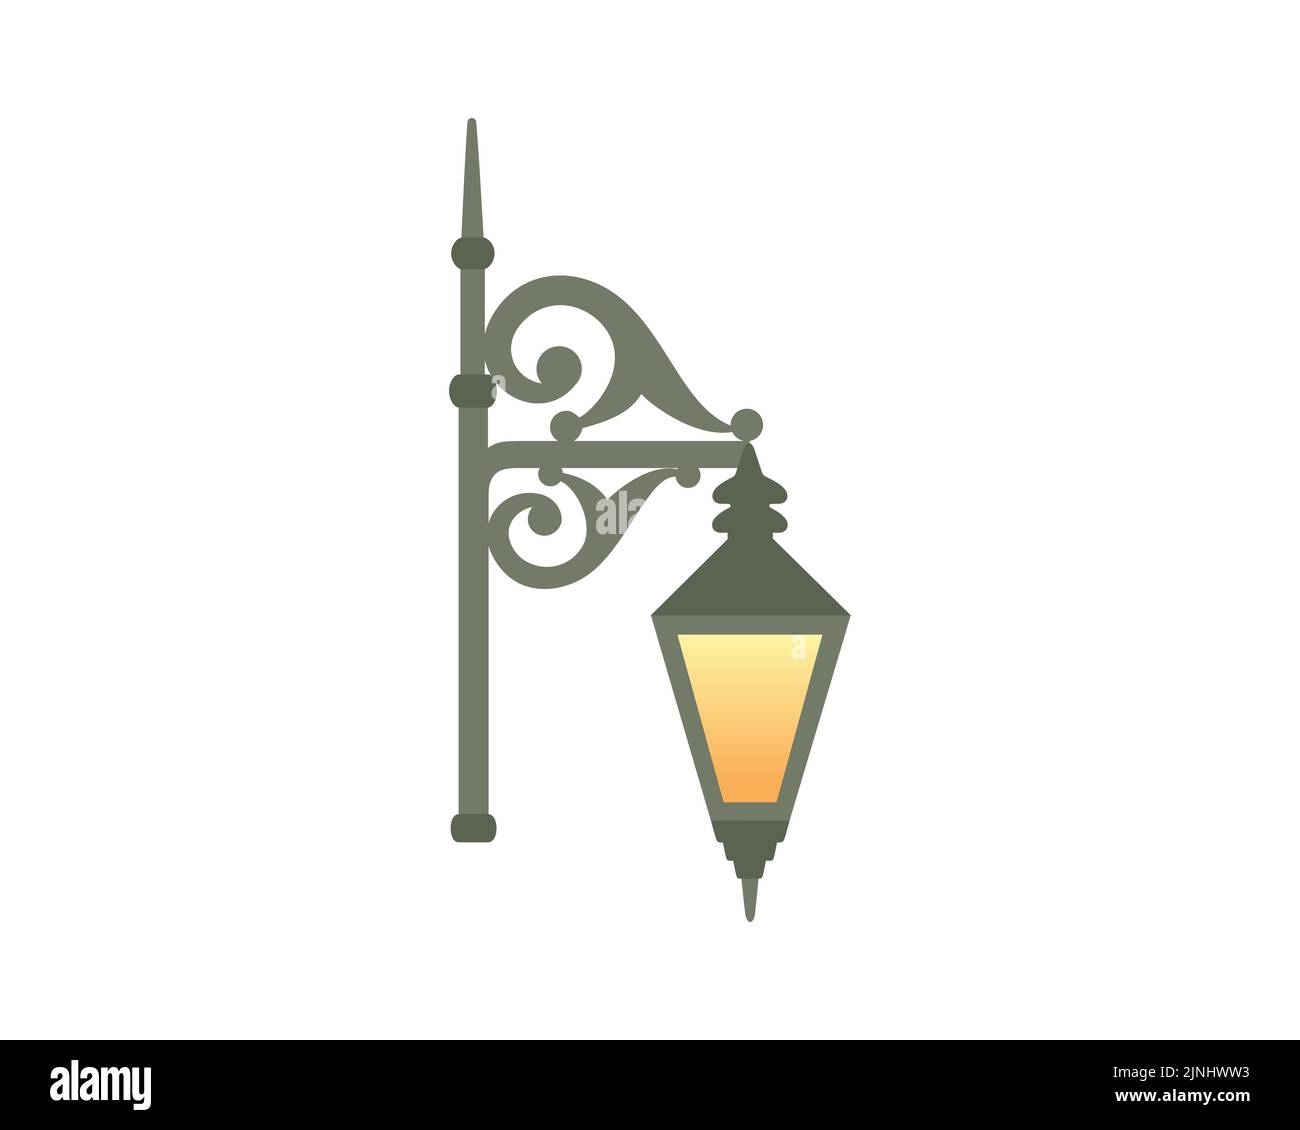 Partie supérieure de l'illustration de la lumière de rue victorienne ou de la lampe de rue victorienne Illustration de Vecteur